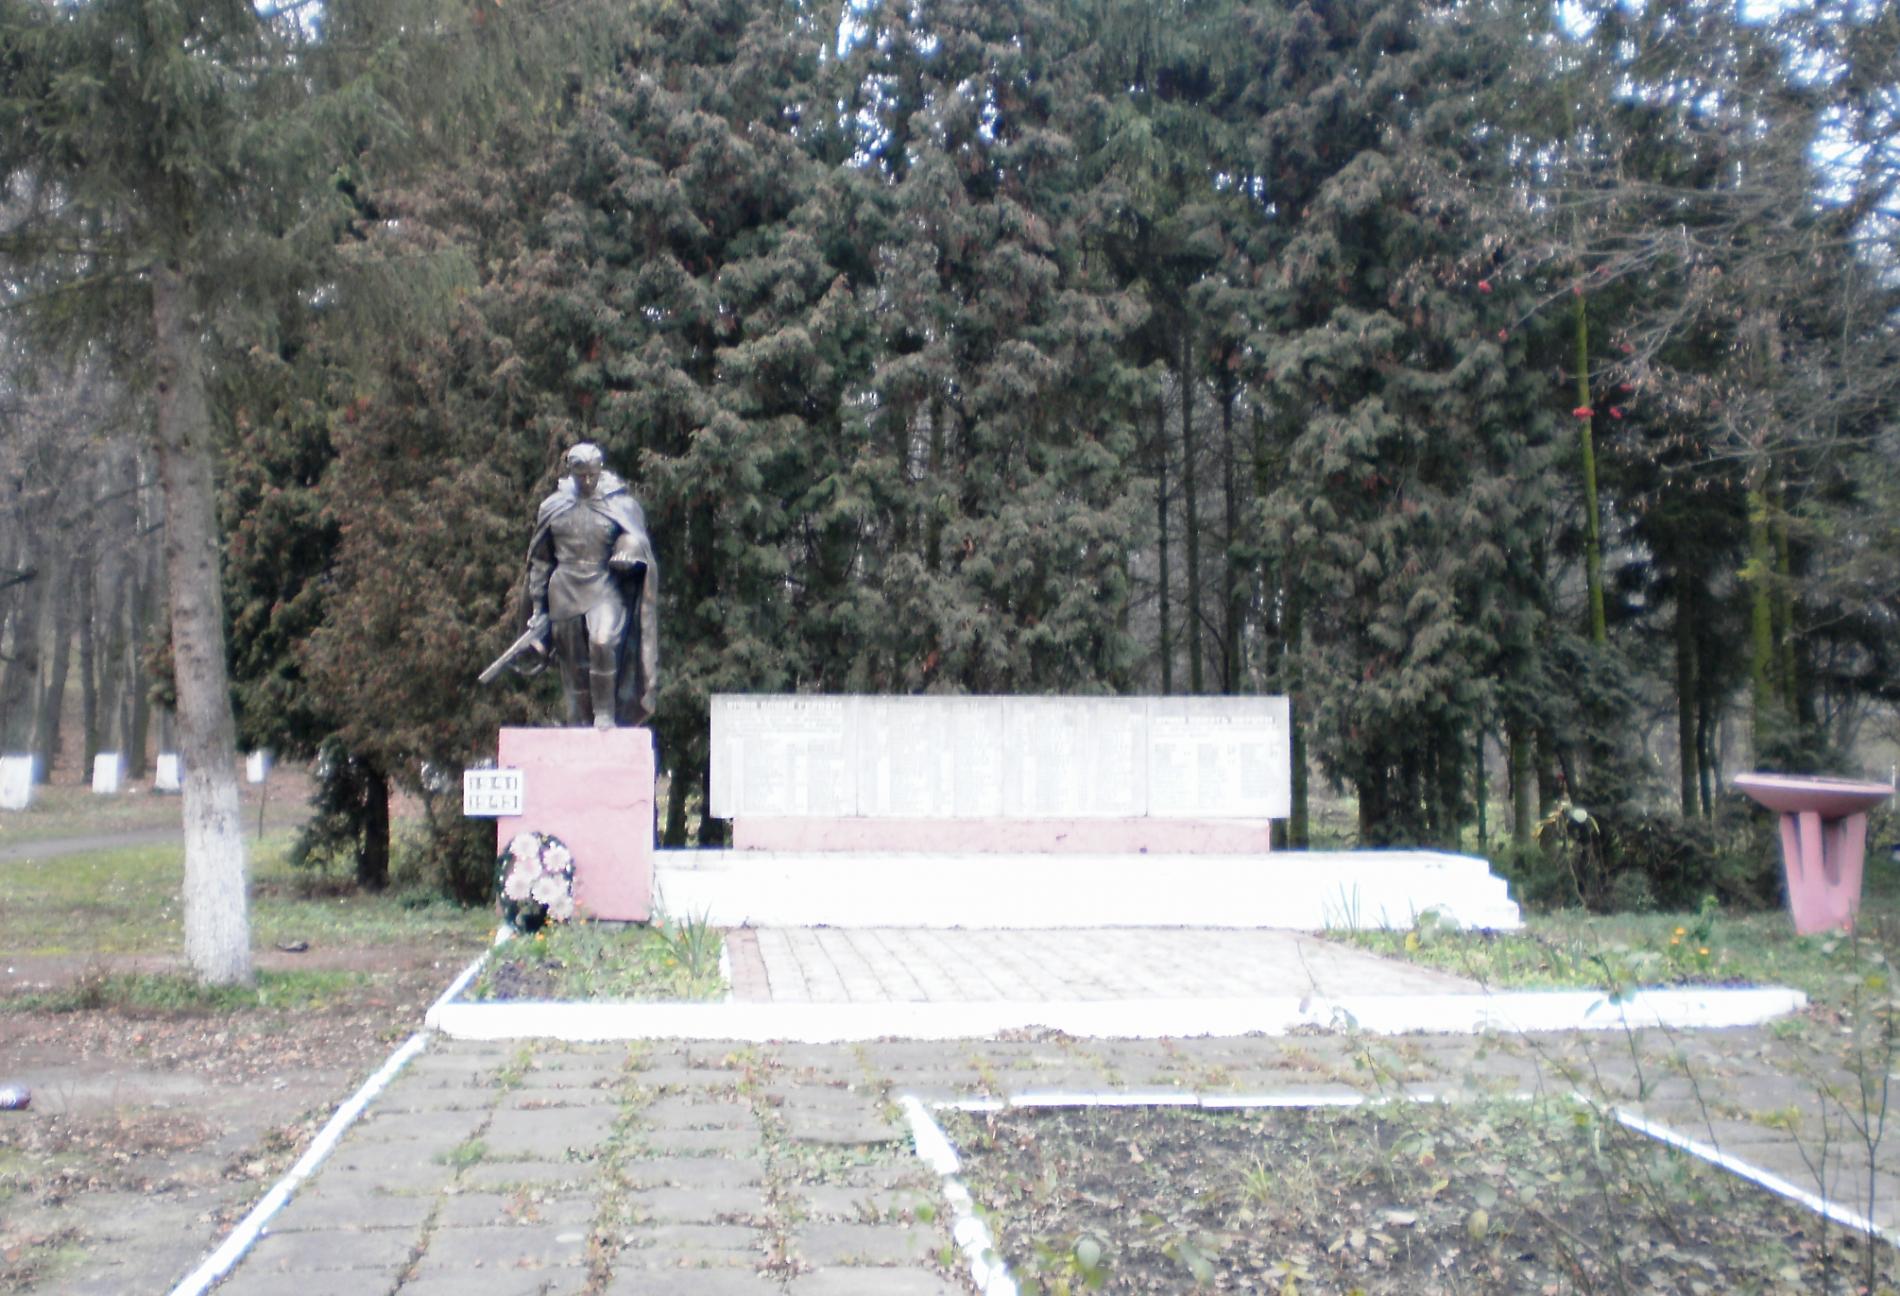 Братская могила в пгт. Большовцы Галицкого района